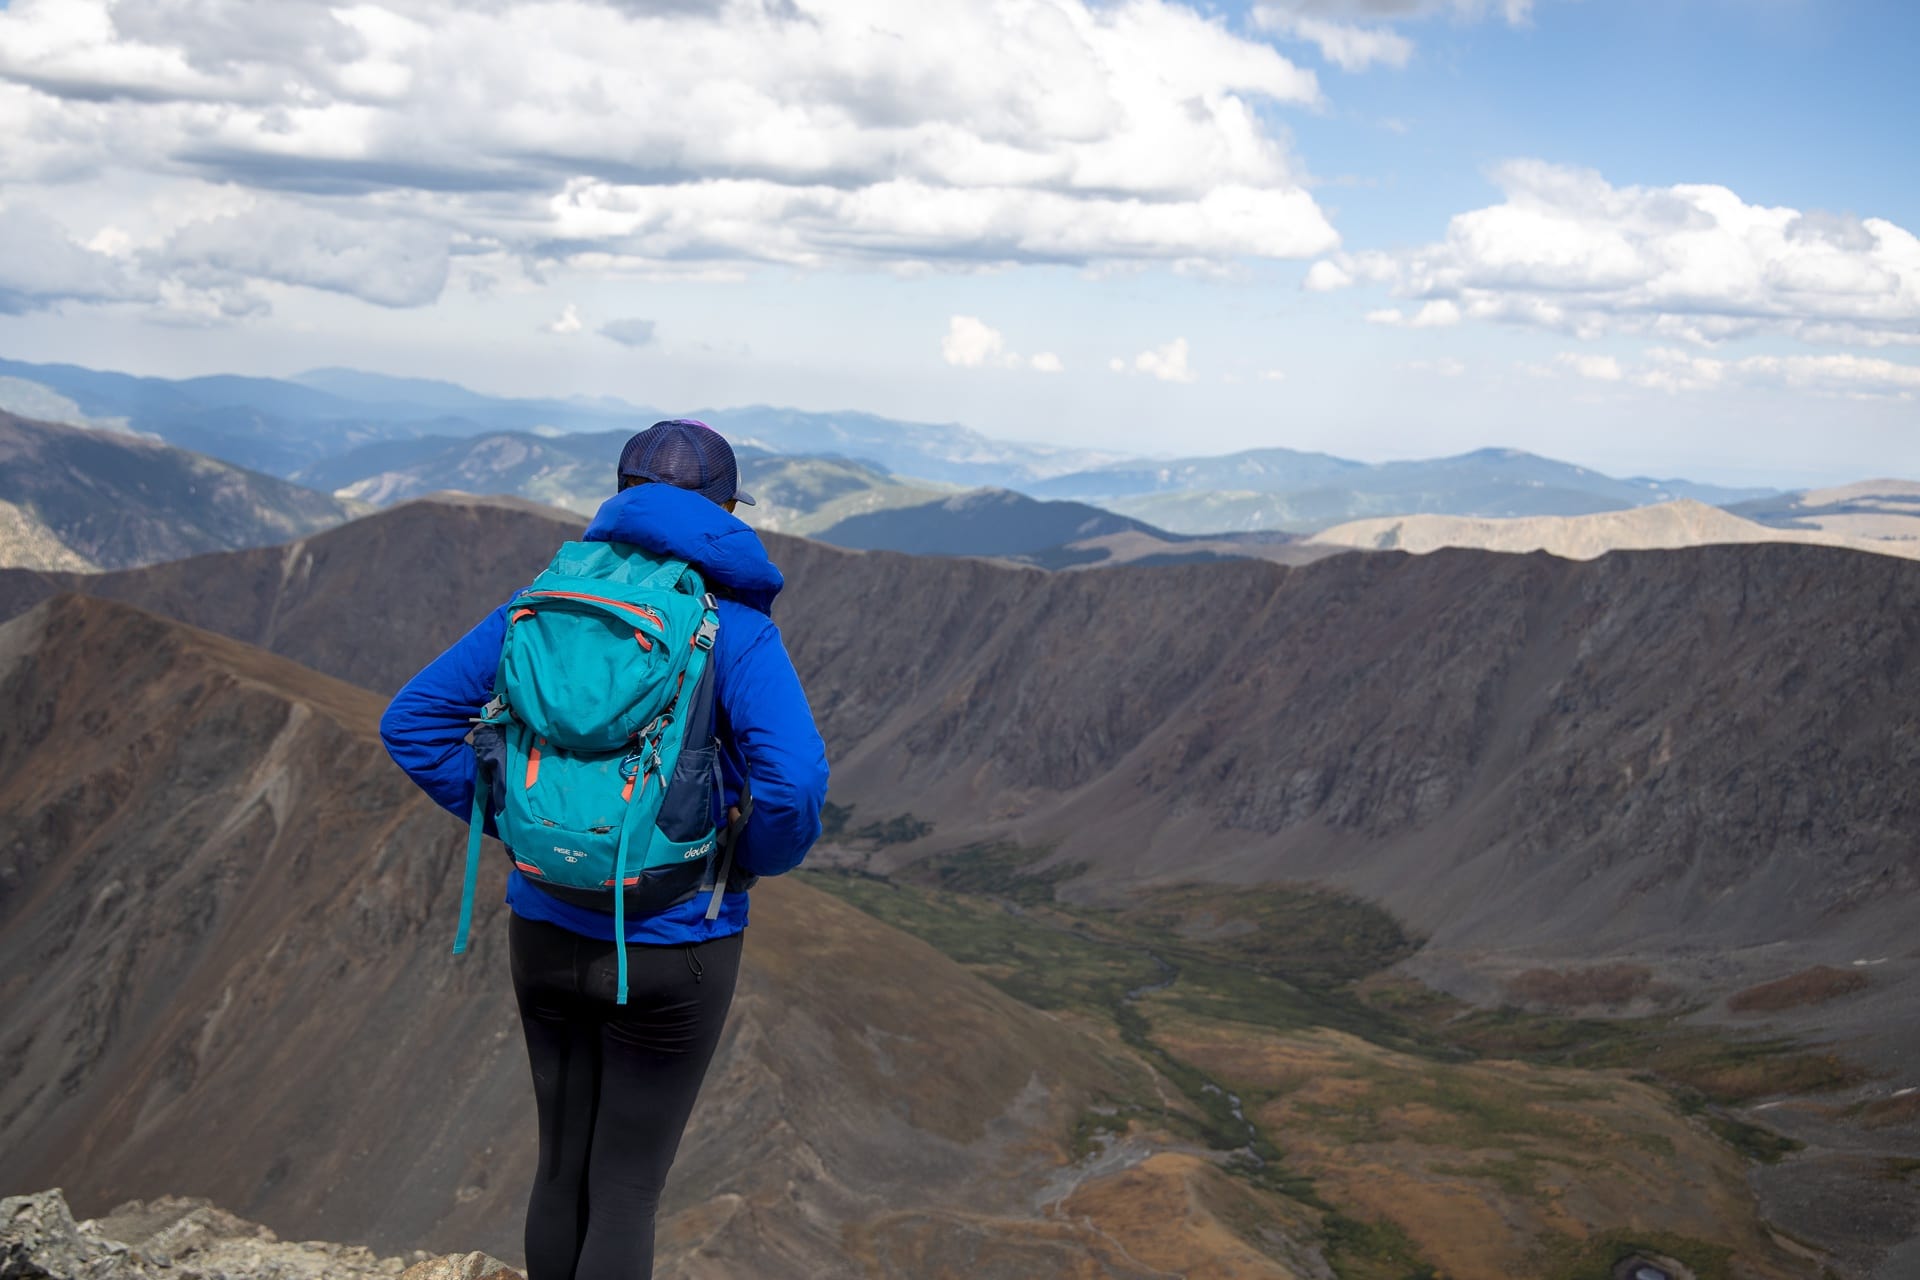 女徒步旅行者站在山顶眺望附近的山脉。她穿着蓝色夹克和蓝色徒步背包。